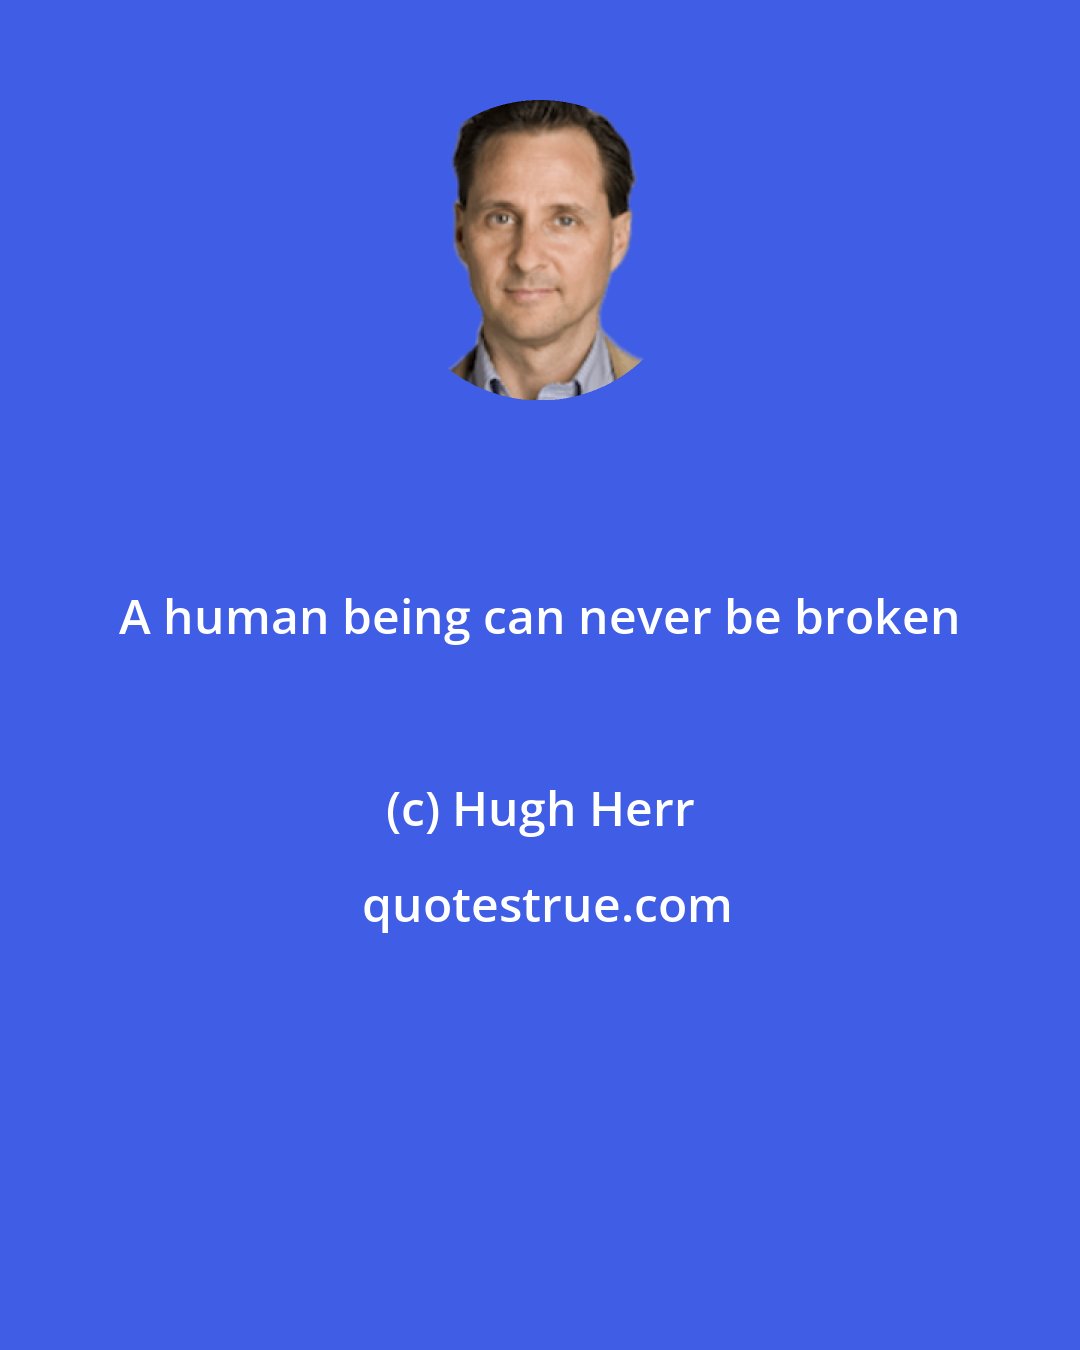 Hugh Herr: A human being can never be broken